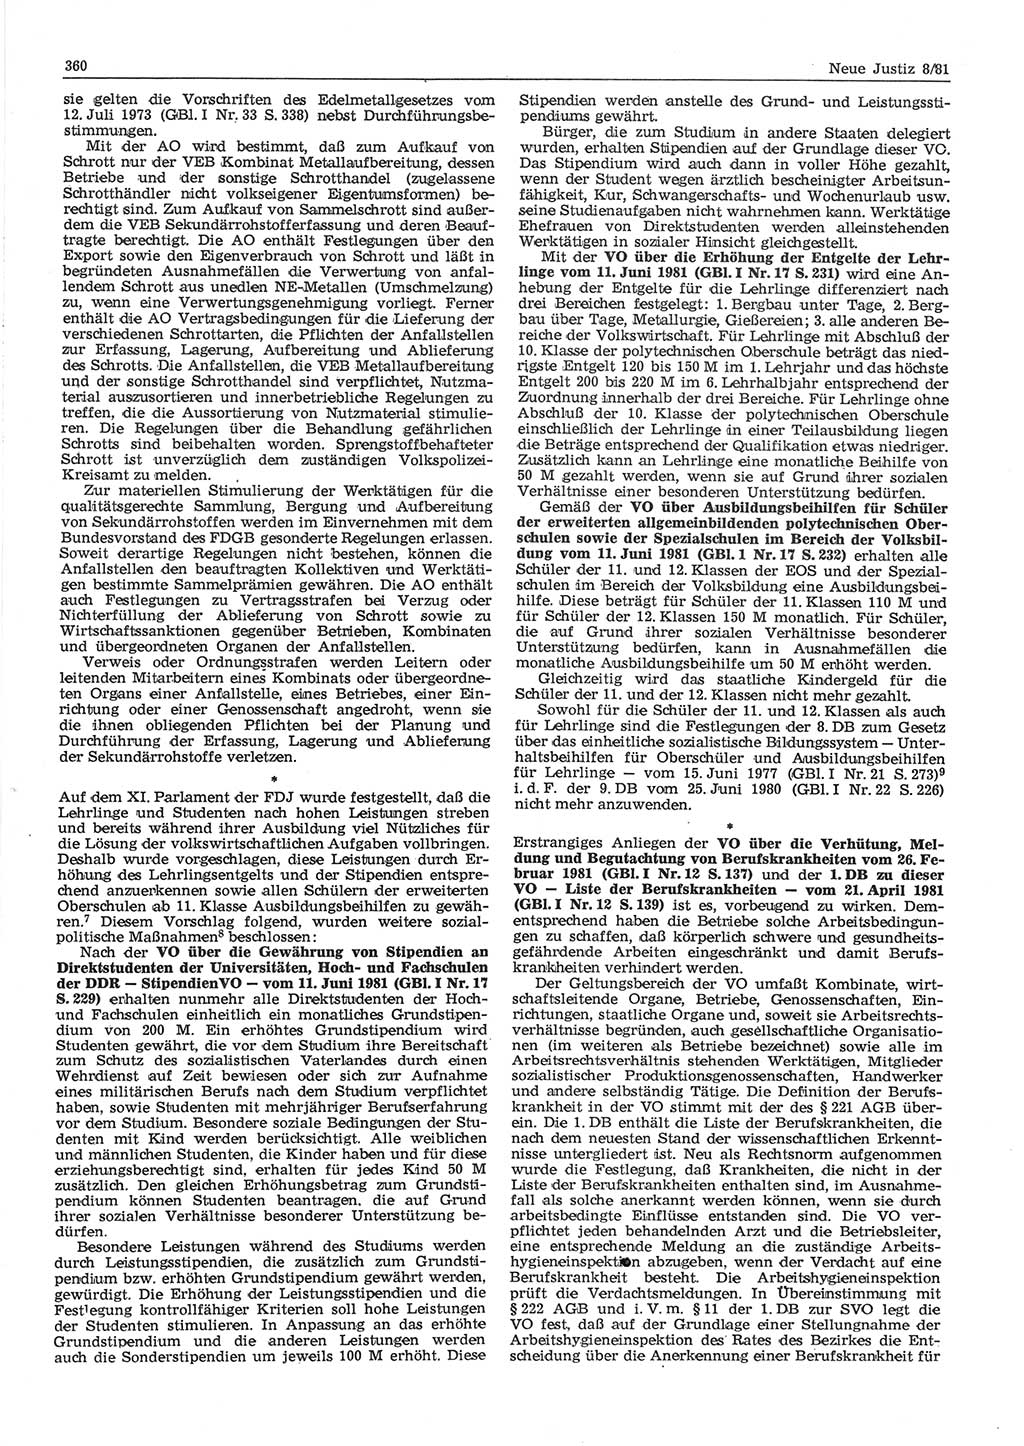 Neue Justiz (NJ), Zeitschrift für sozialistisches Recht und Gesetzlichkeit [Deutsche Demokratische Republik (DDR)], 35. Jahrgang 1981, Seite 360 (NJ DDR 1981, S. 360)